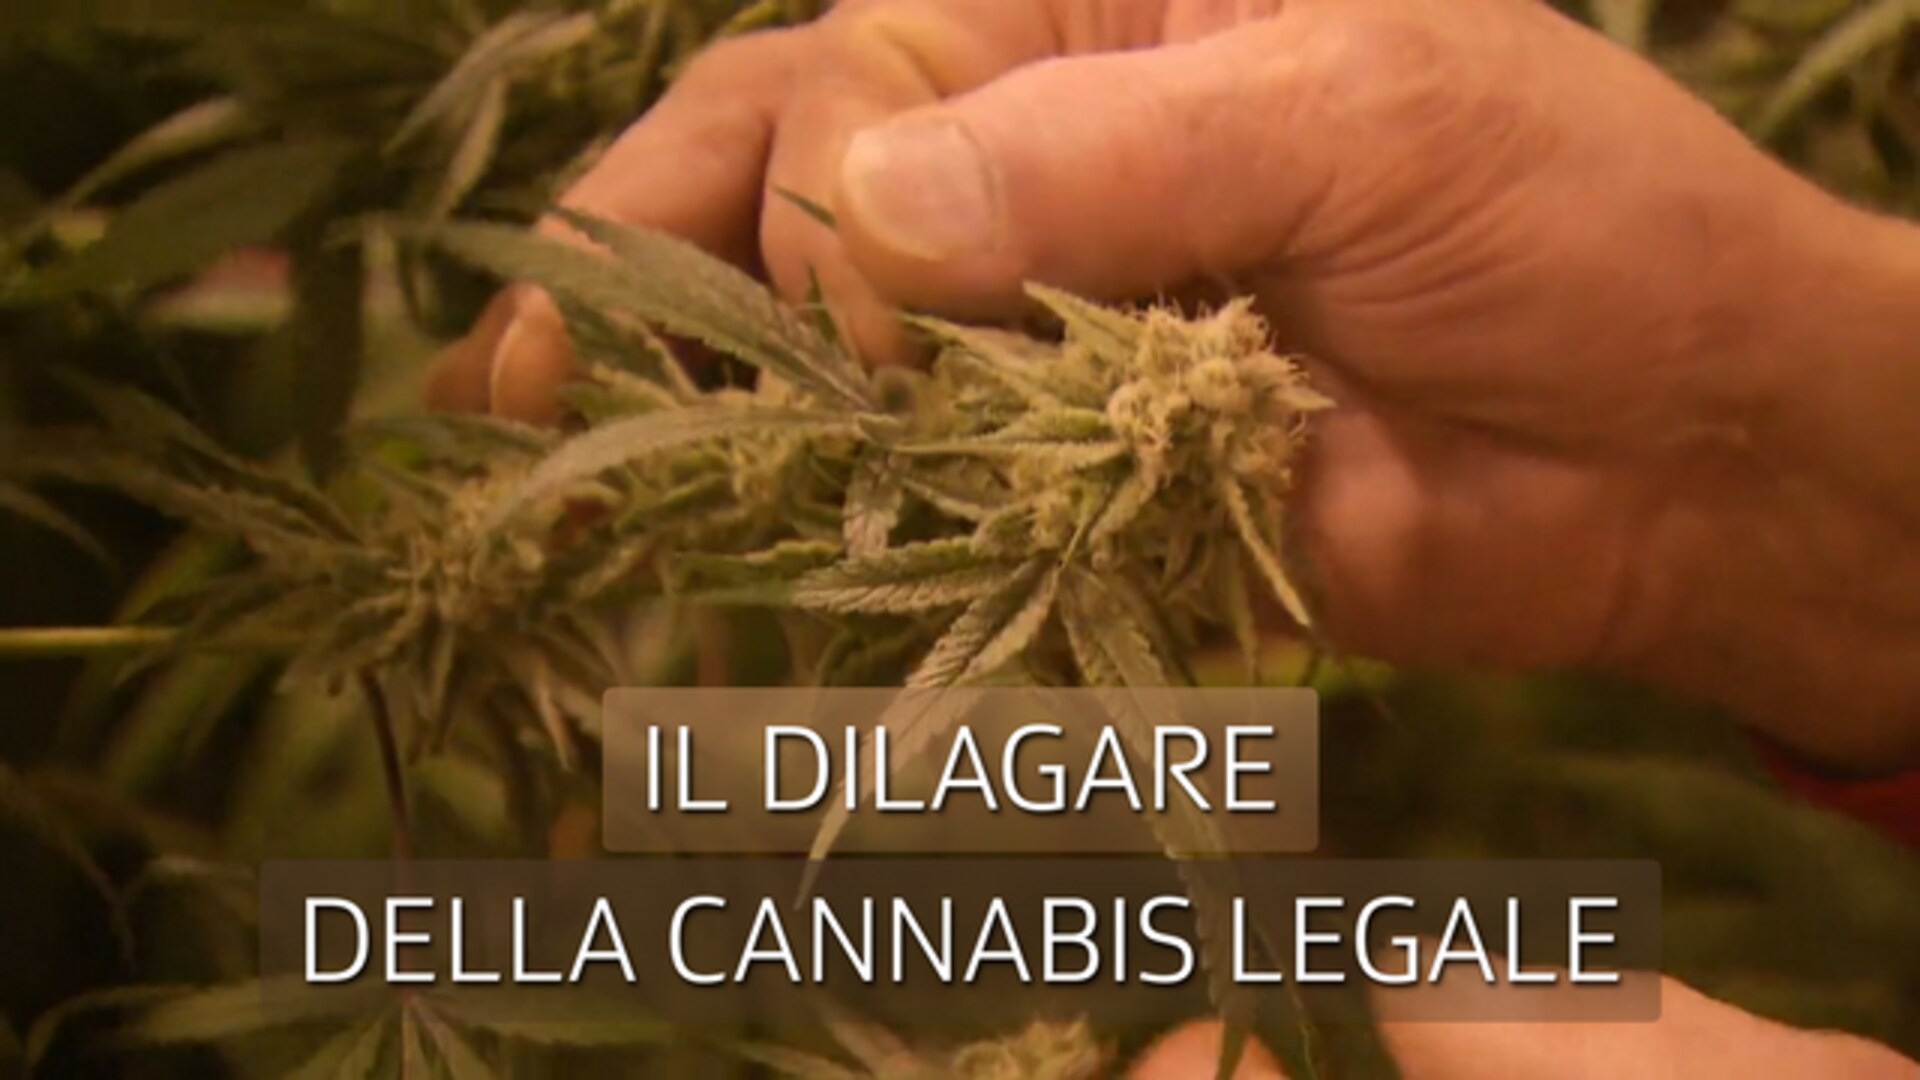 Il dilagare della cannabis legale